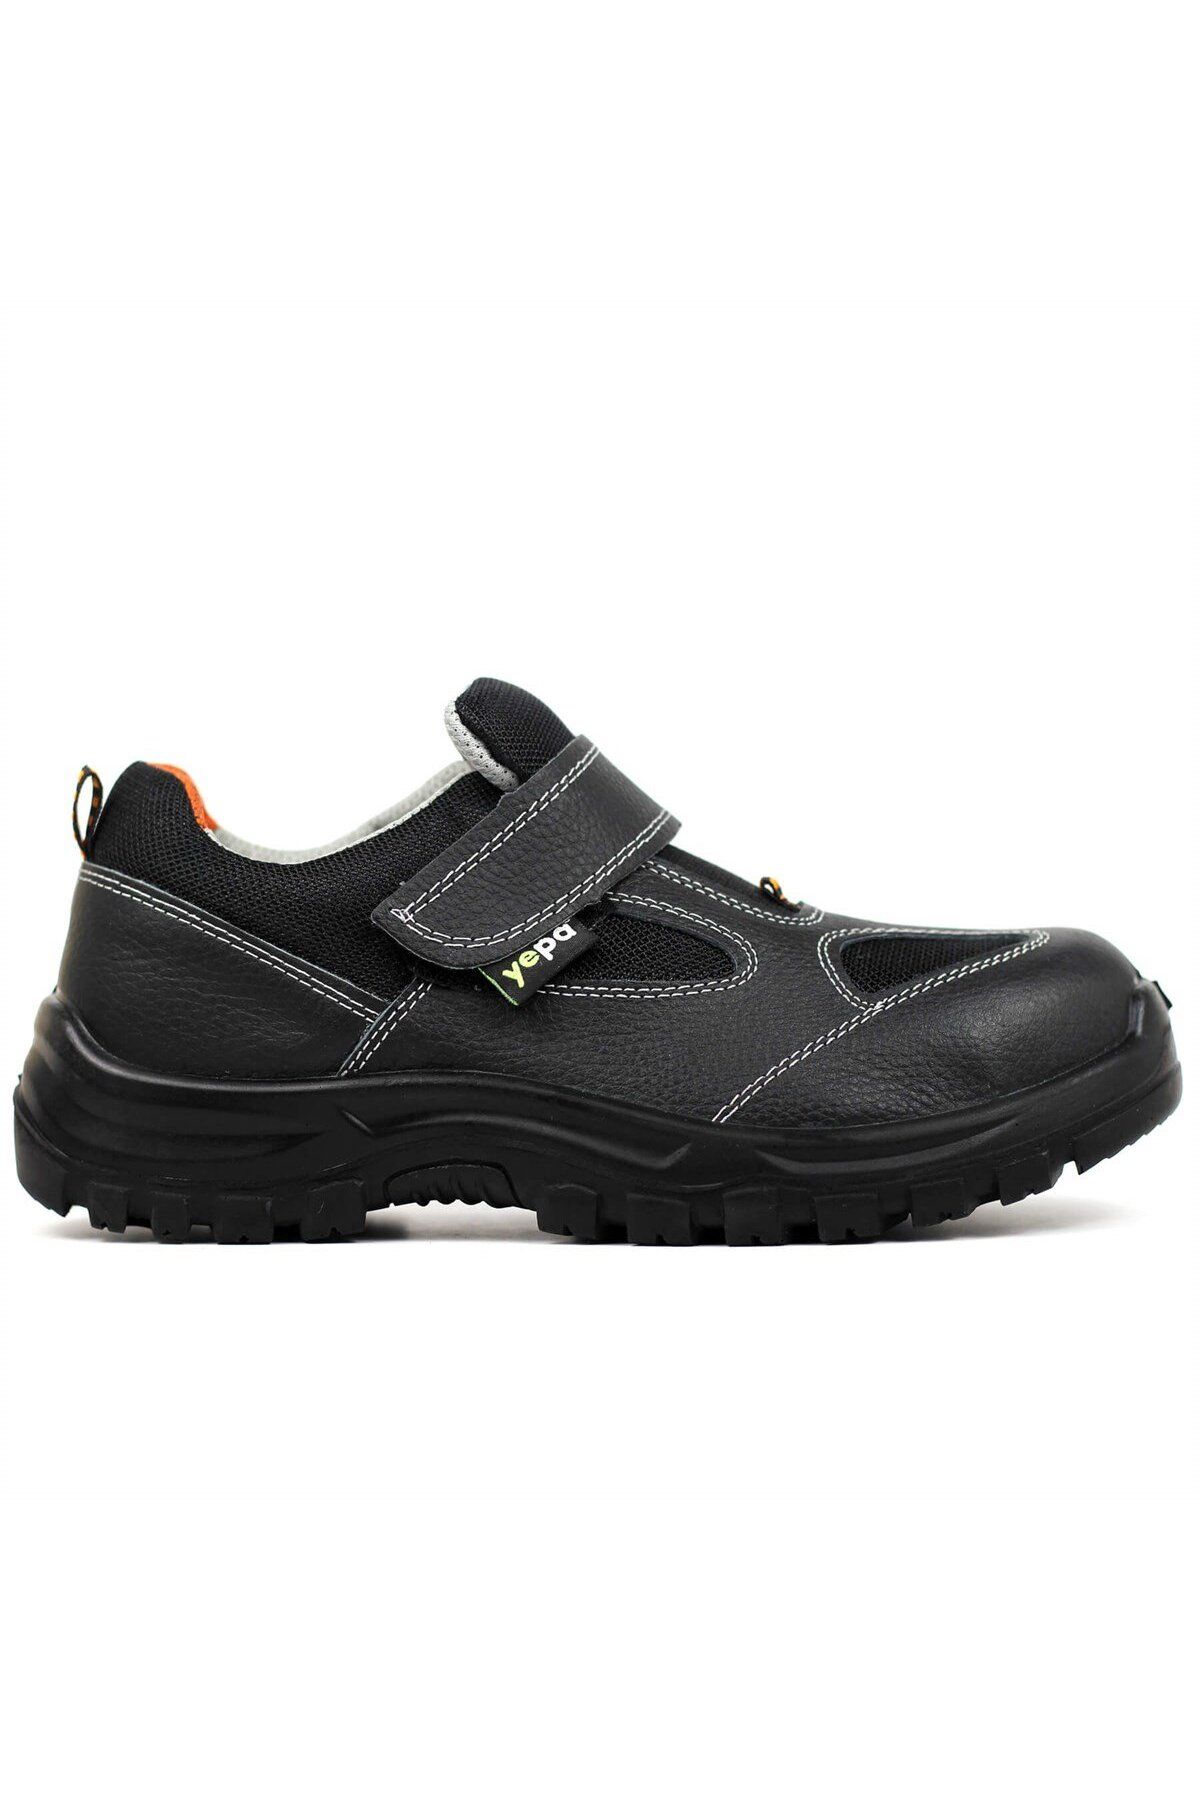 Yepa Hava Alan Yazlık Hakiki Deri Çelik Burunlu Çok Amaçlı Iş Güvenliği Ayakkabısı Siyah